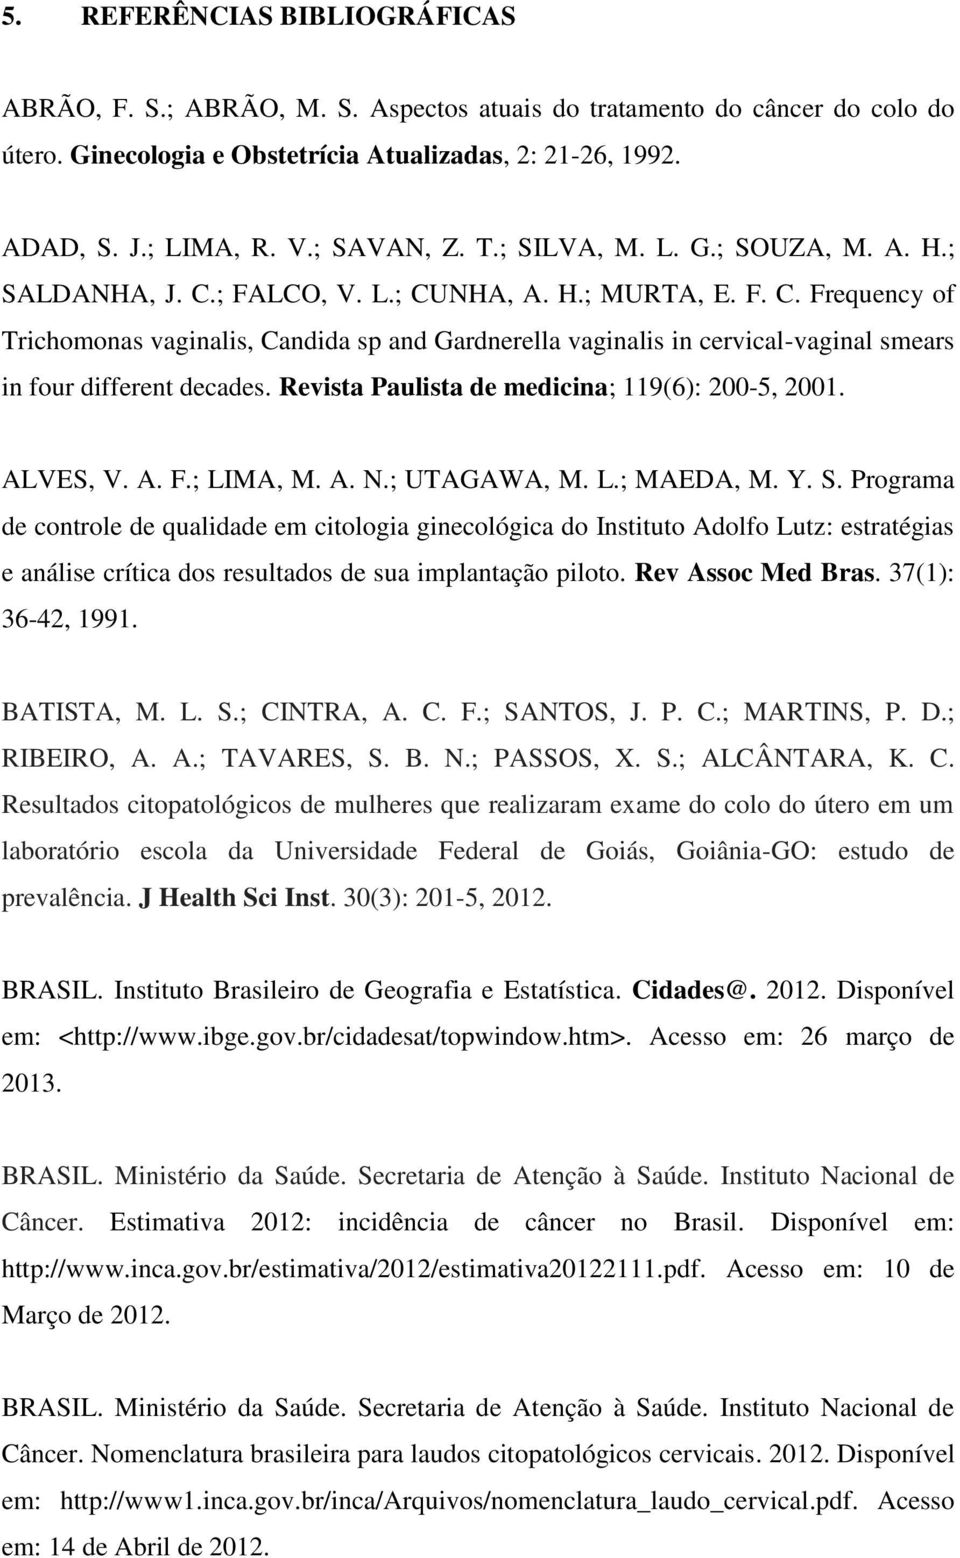 Revista Paulista de medicina; 119(6): 200-5, 2001. ALVES, V. A. F.; LIMA, M. A. N.; UTAGAWA, M. L.; MAEDA, M. Y. S.